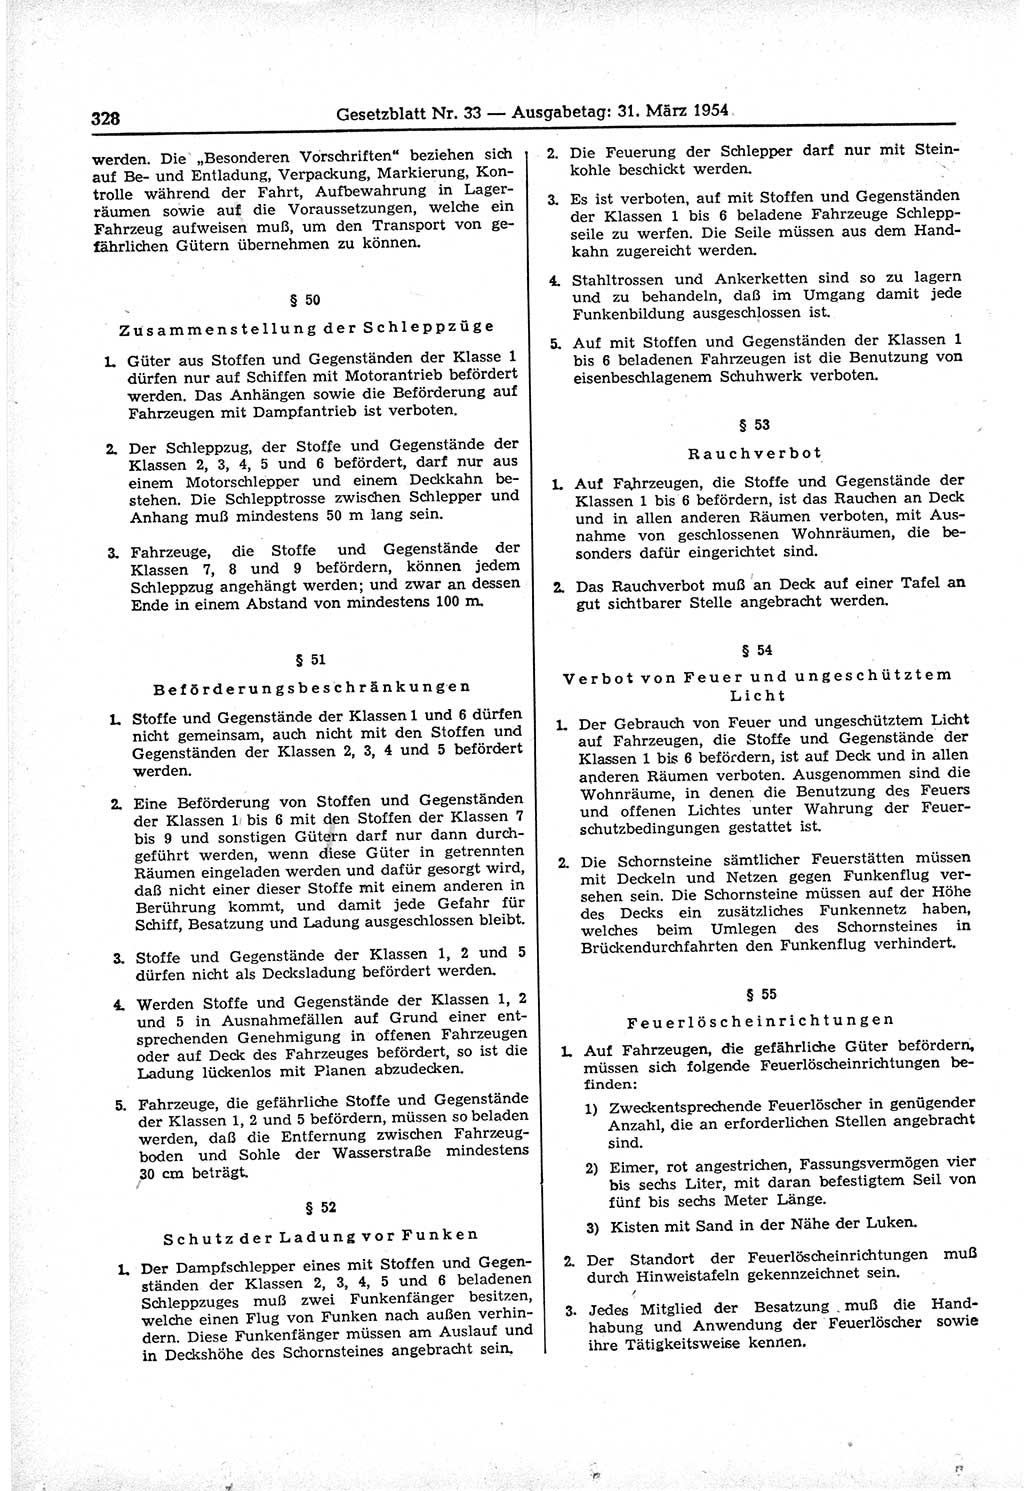 Gesetzblatt (GBl.) der Deutschen Demokratischen Republik (DDR) 1954, Seite 328 (GBl. DDR 1954, S. 328)